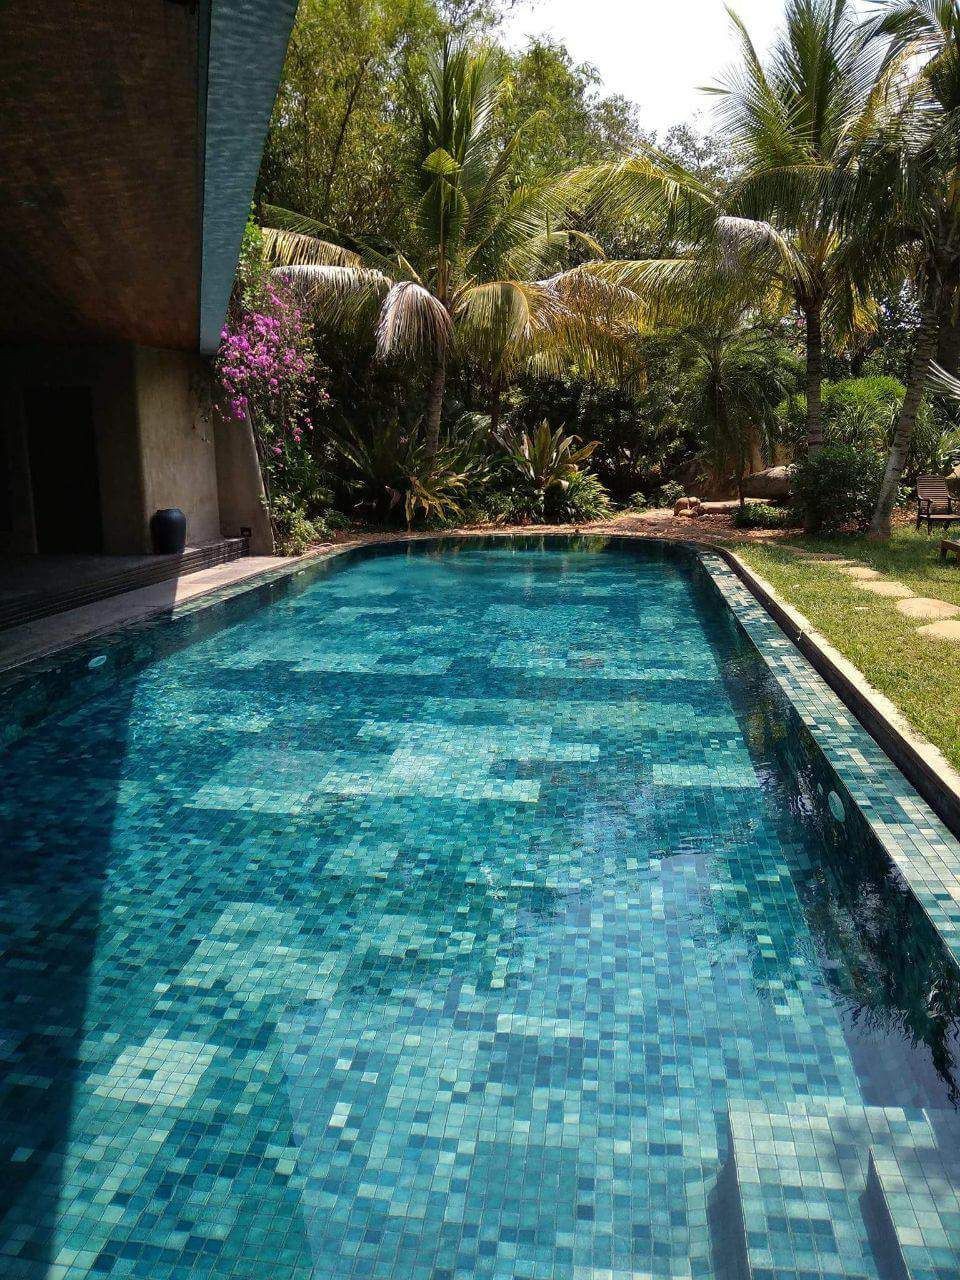 Private studio villa with pool